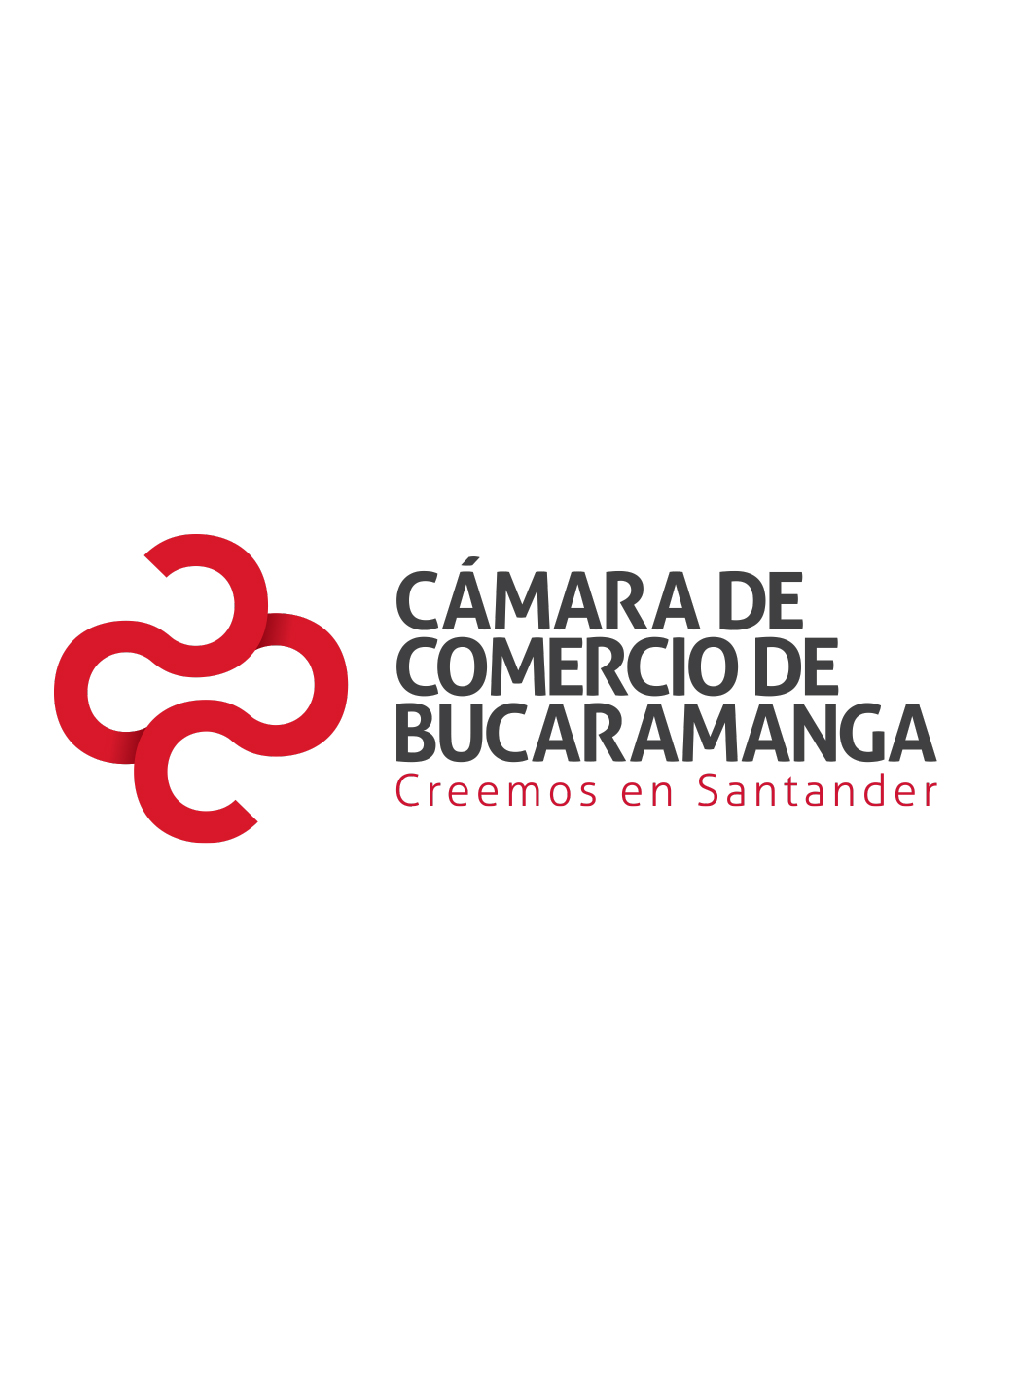 Exportaciones de Servicios en Santander 2019 - enero-junio